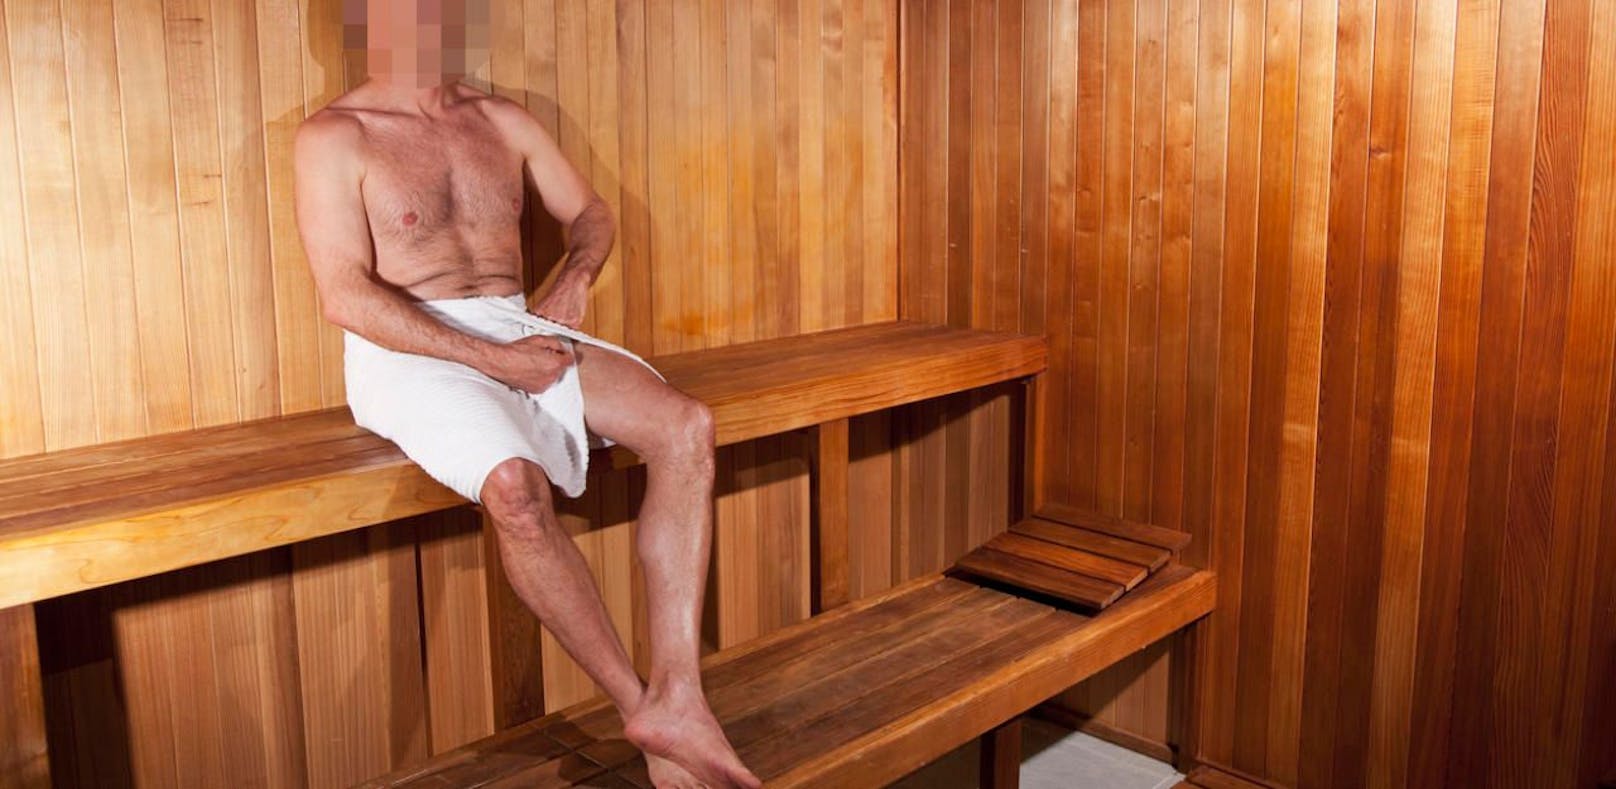 Ein 45-Jähriger masturbierte in Gegenwart eines jungen Paares in einer öffentlichen Sauna. (Symbol)